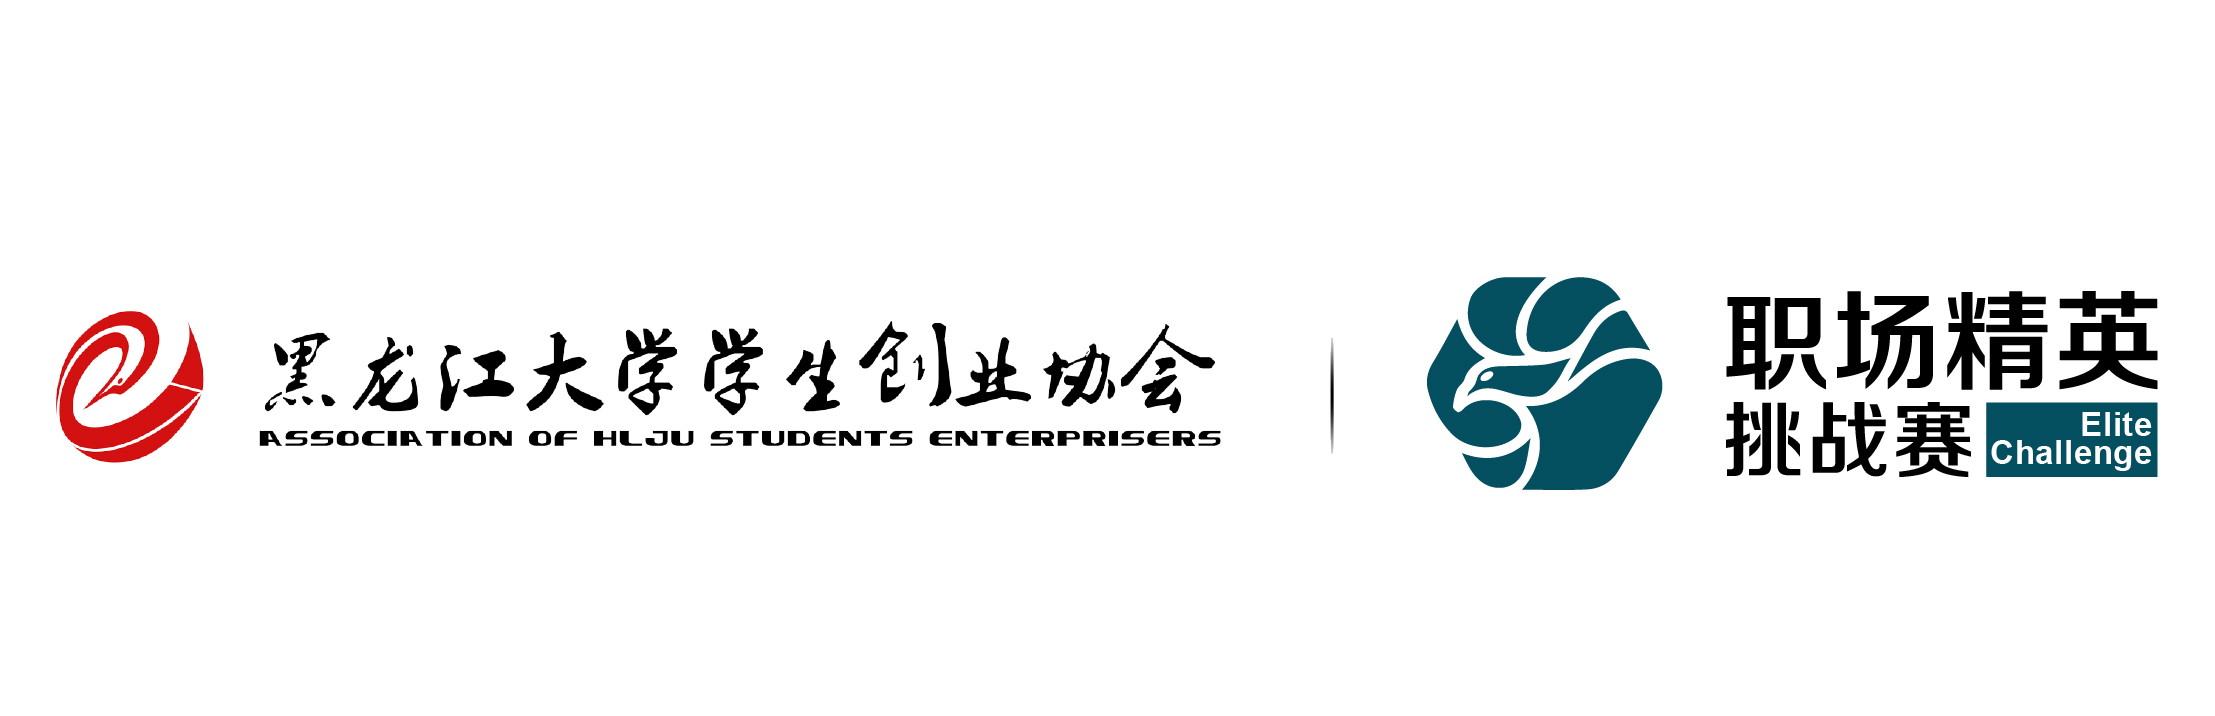 黑龍江大學學生創業協會